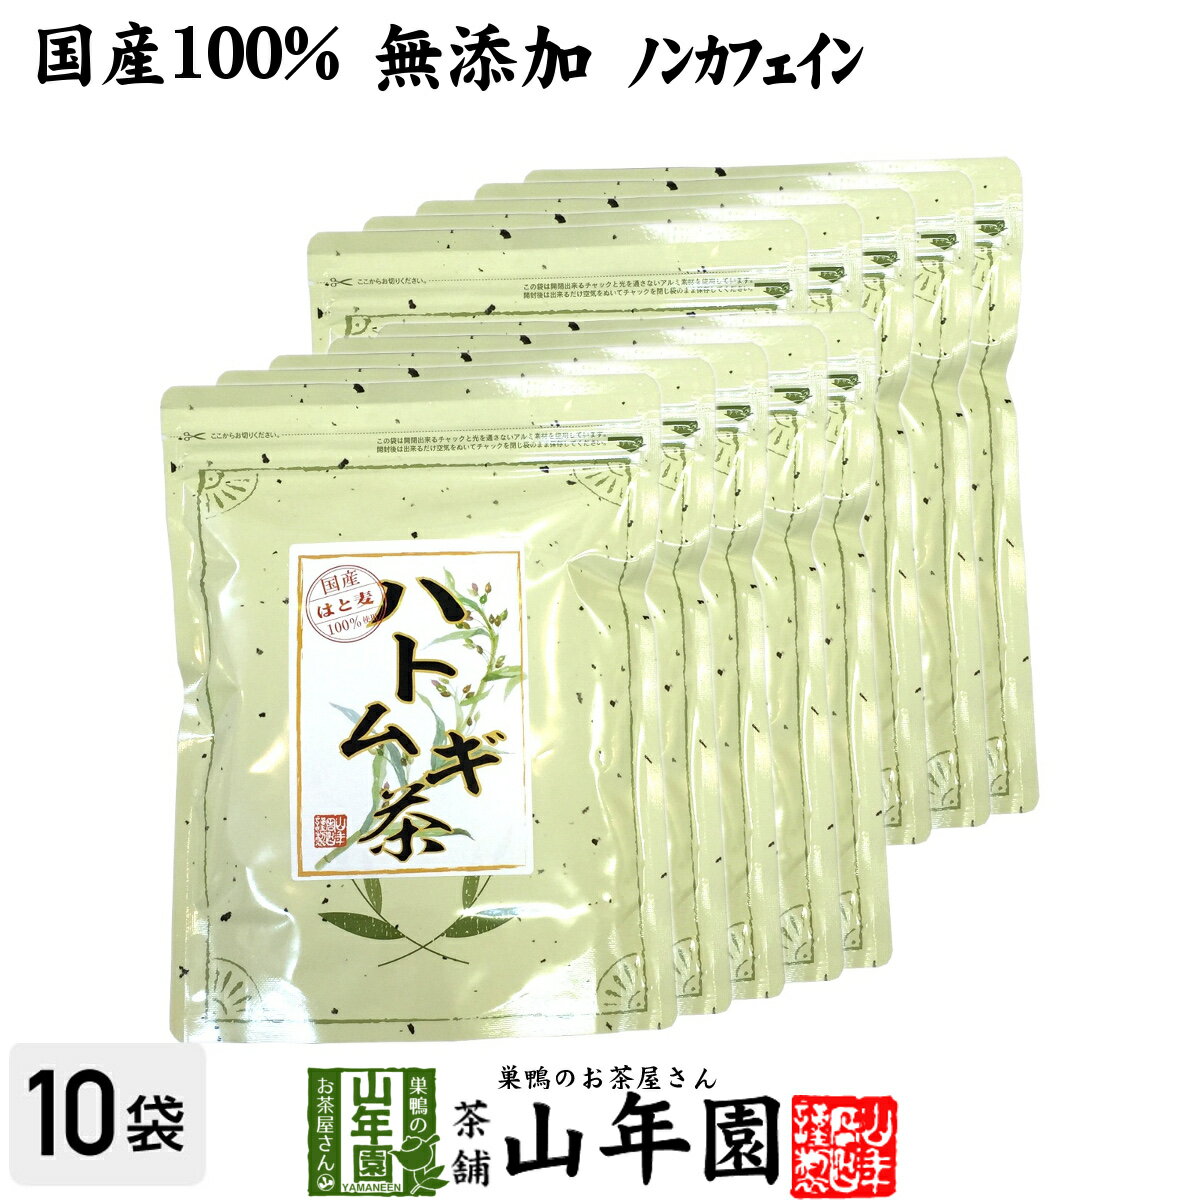 【国産 100%】ハトムギ茶 7g×24パック×10袋セット